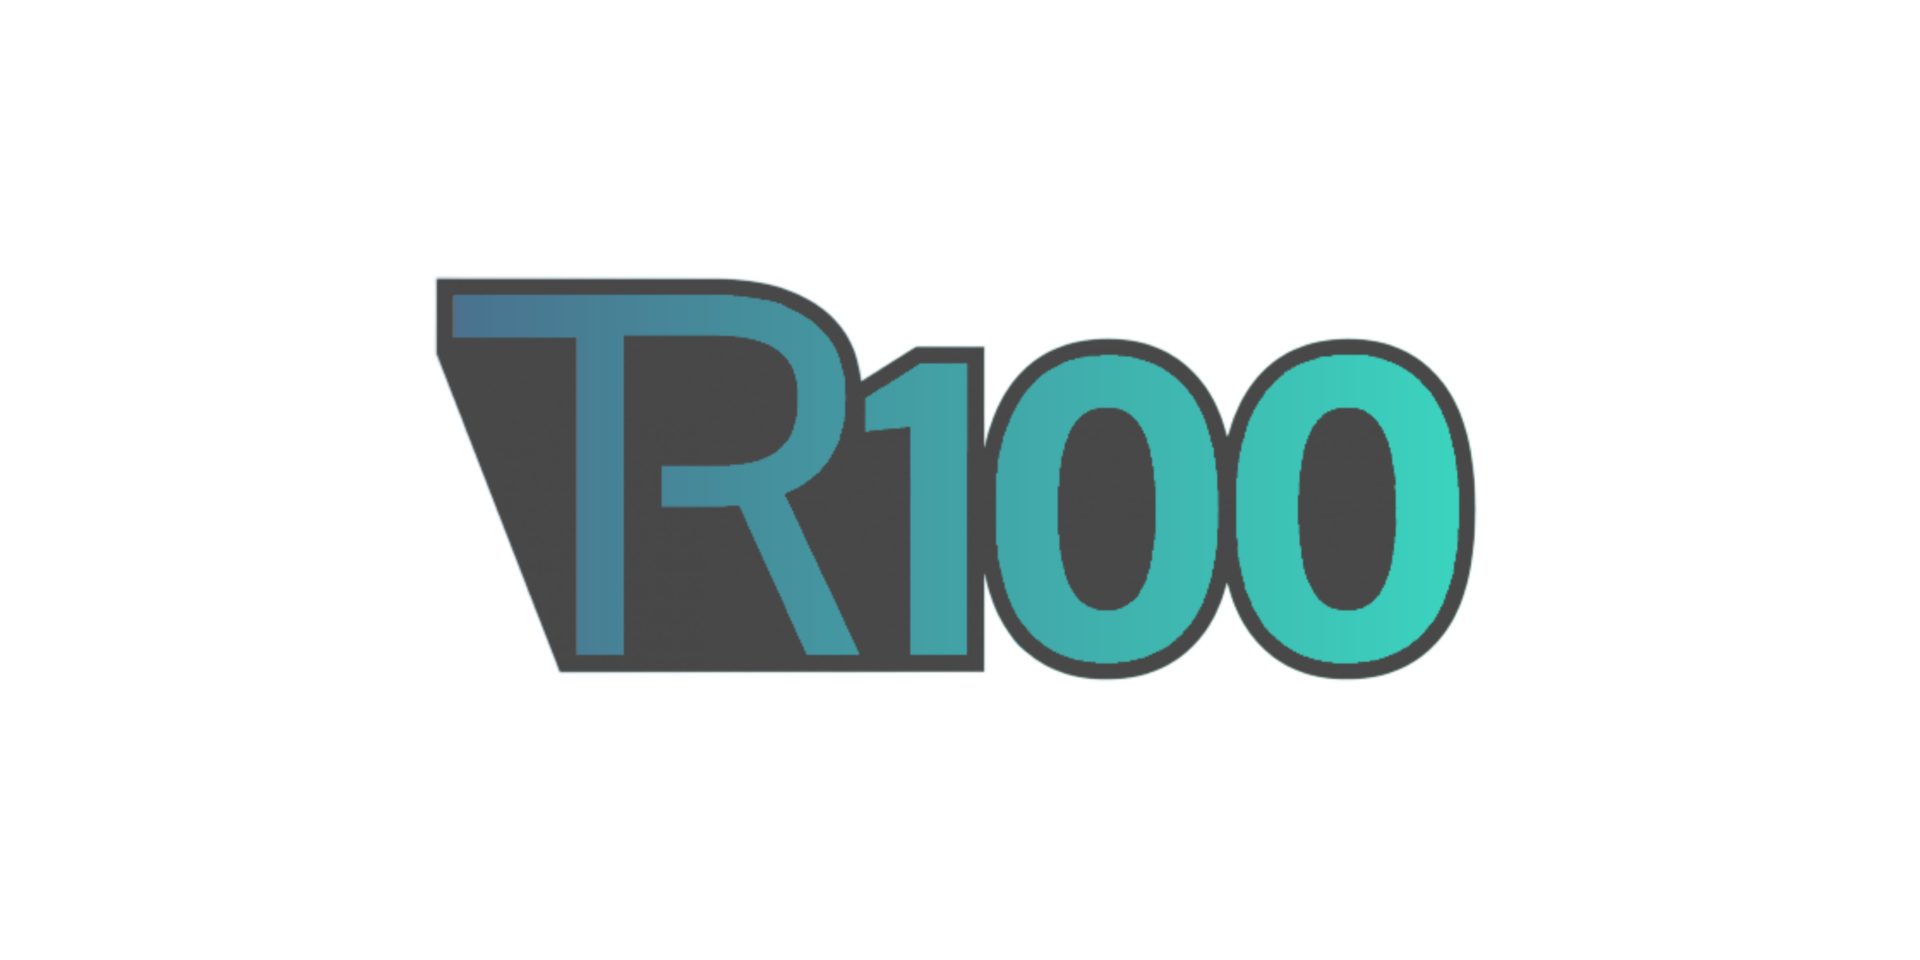 TR100 header